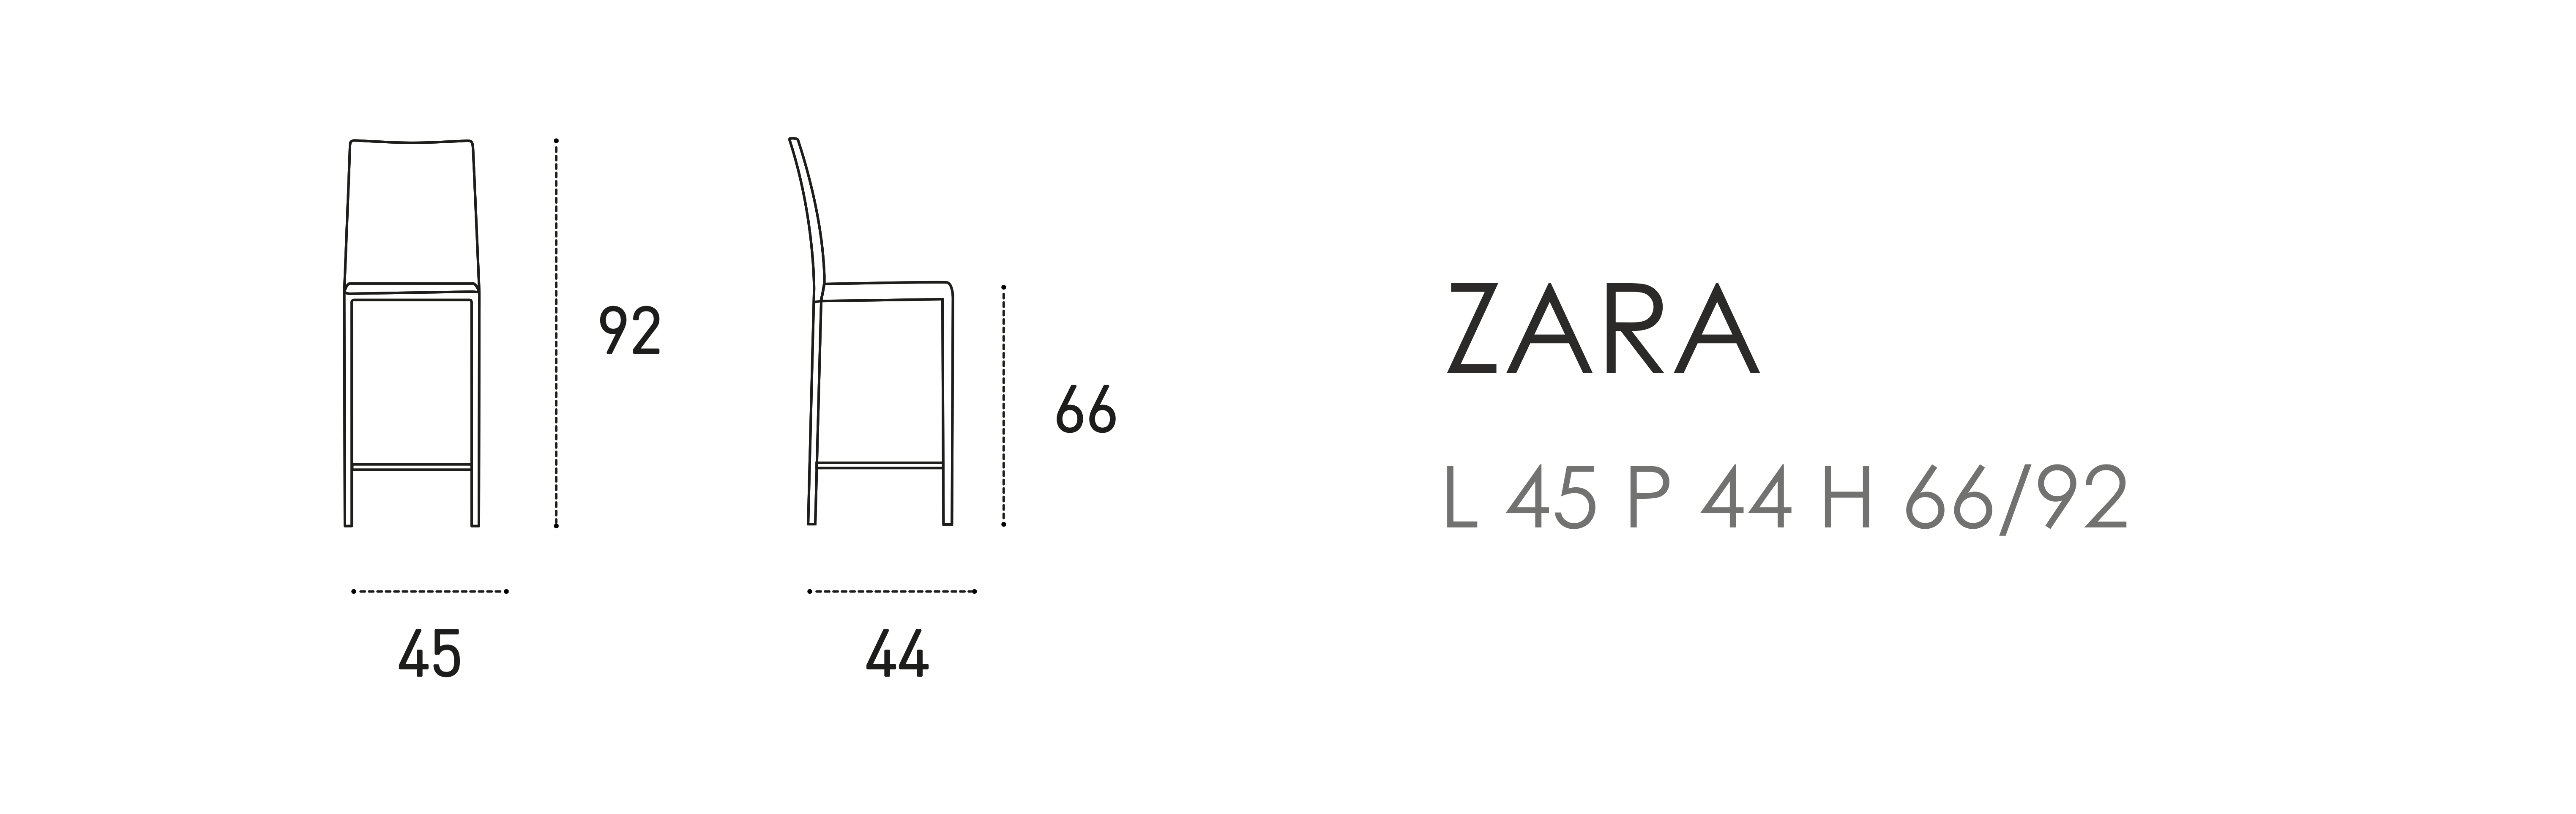 Zara L 45 P 44 H 66/92